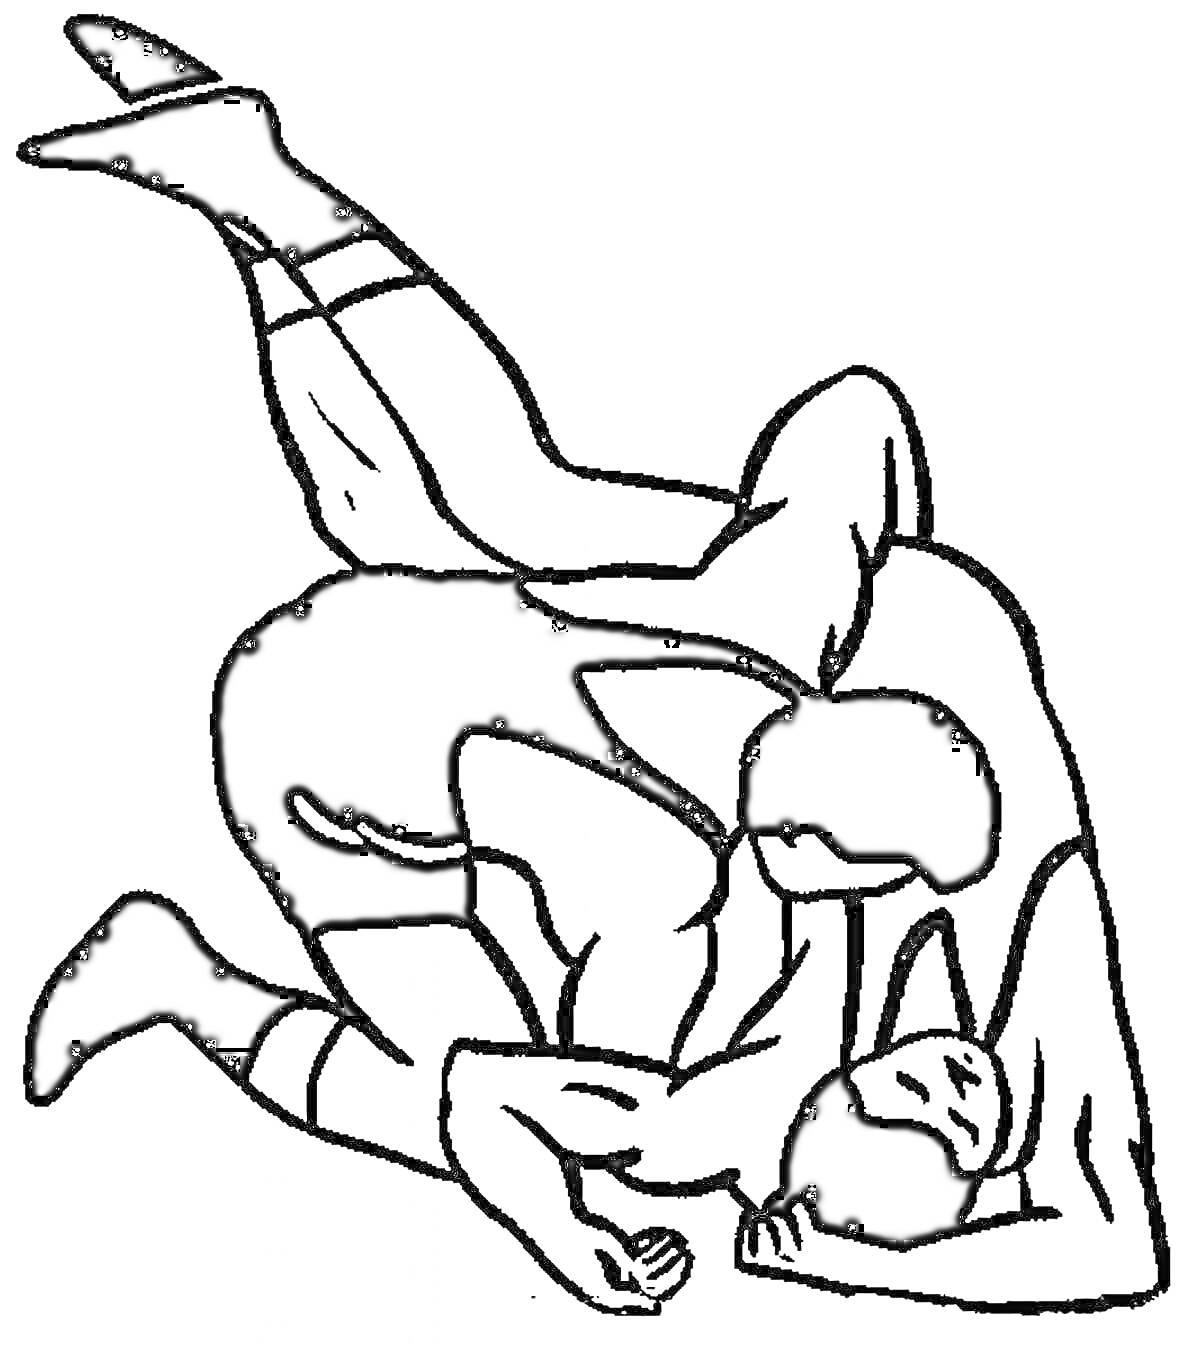 Двое борцов в спортивной схватке на полу